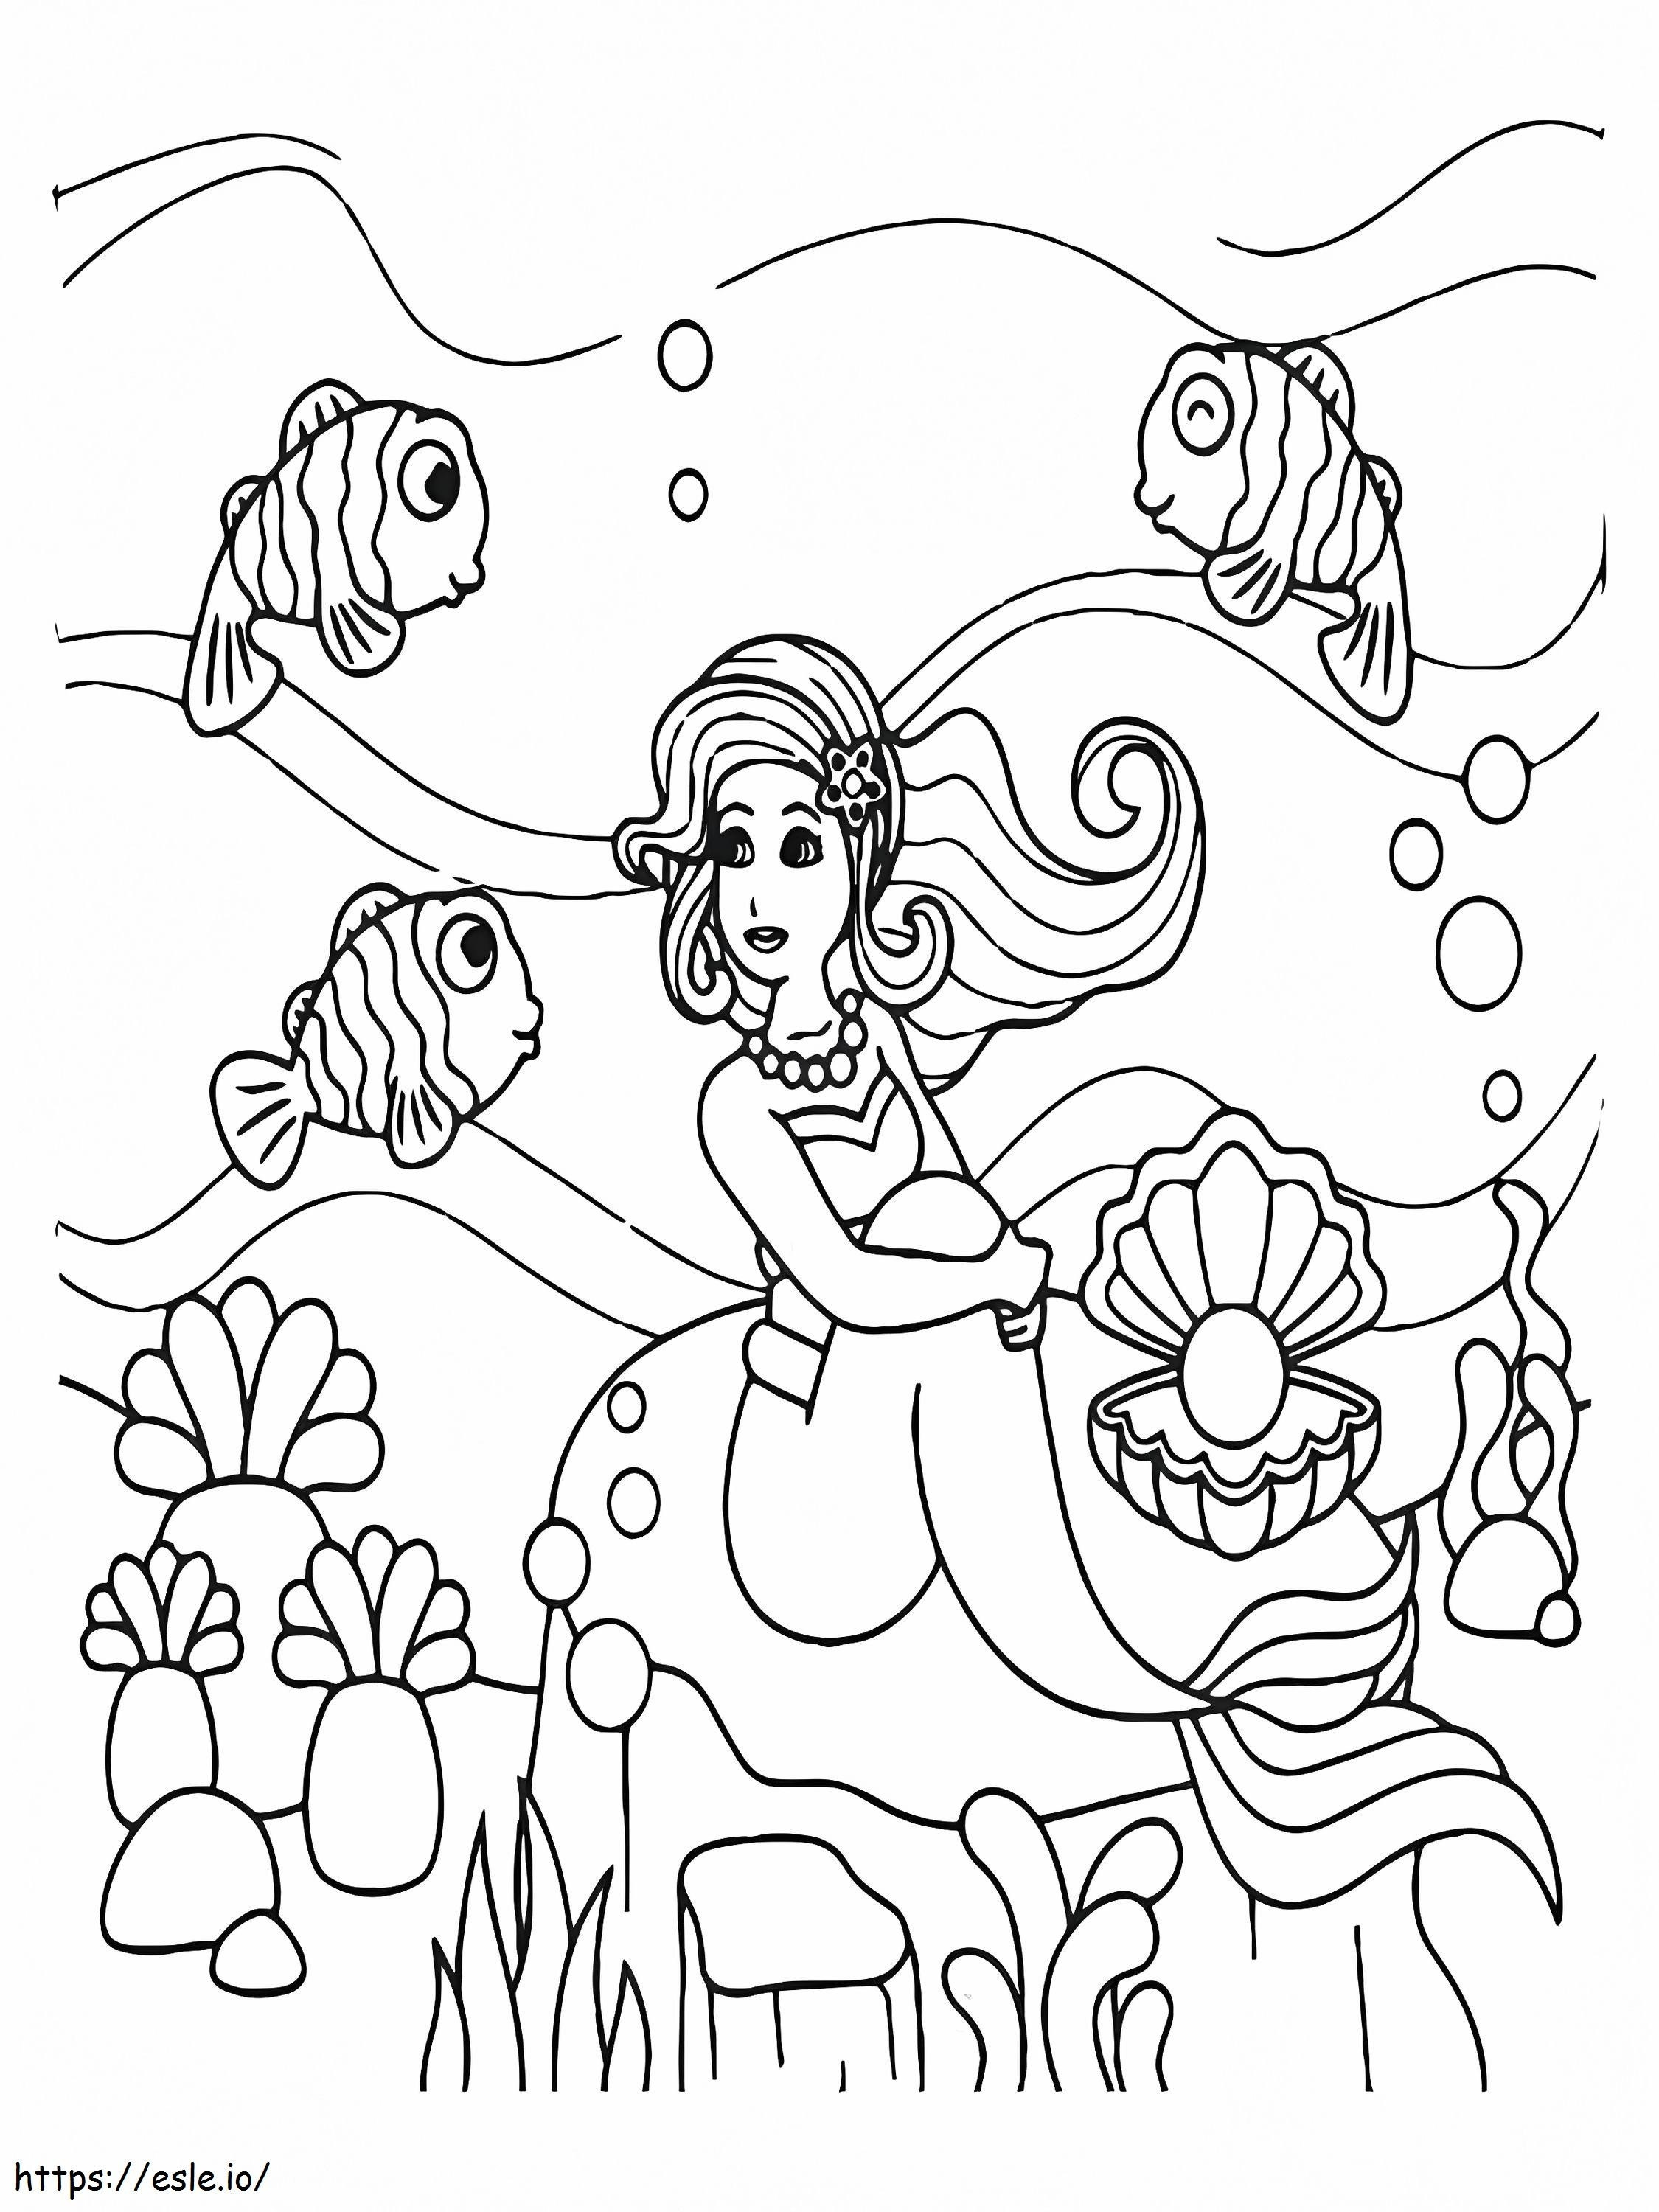 Concha e peixe do mar sereia para colorir